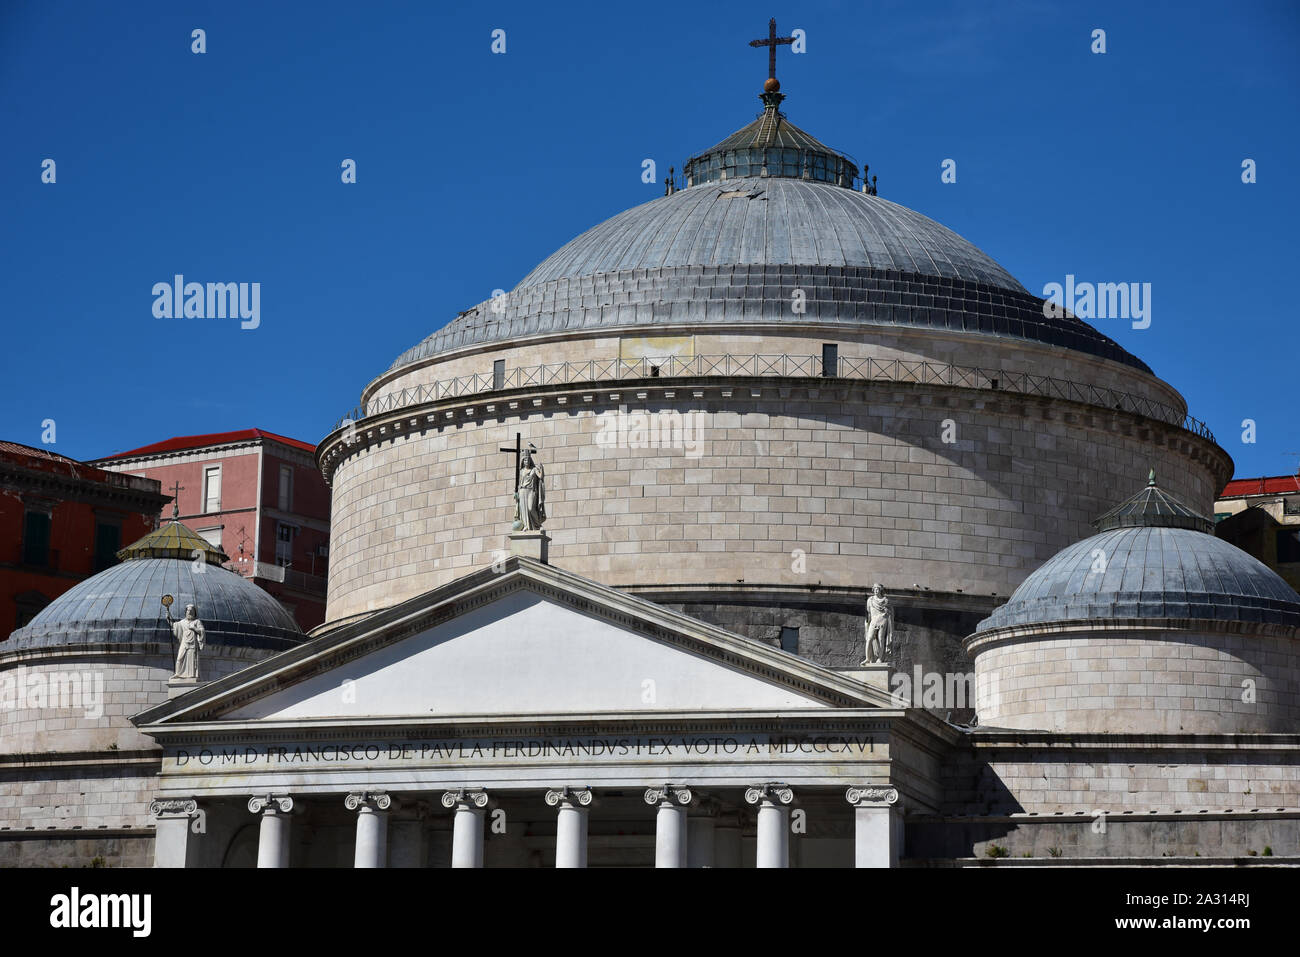 The impressive dome of Basilica di San Francesco di Paola, covered with calcareous stone, Piazza del Plebiscito, Naples, Italy, Europe. Stock Photo